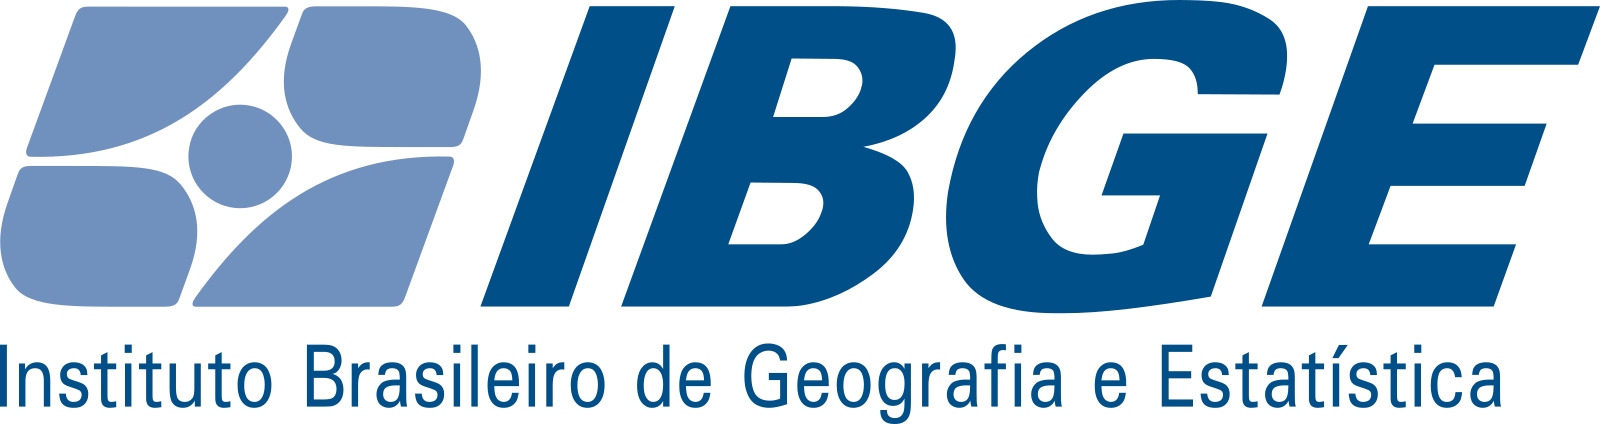 IBGE Logo.